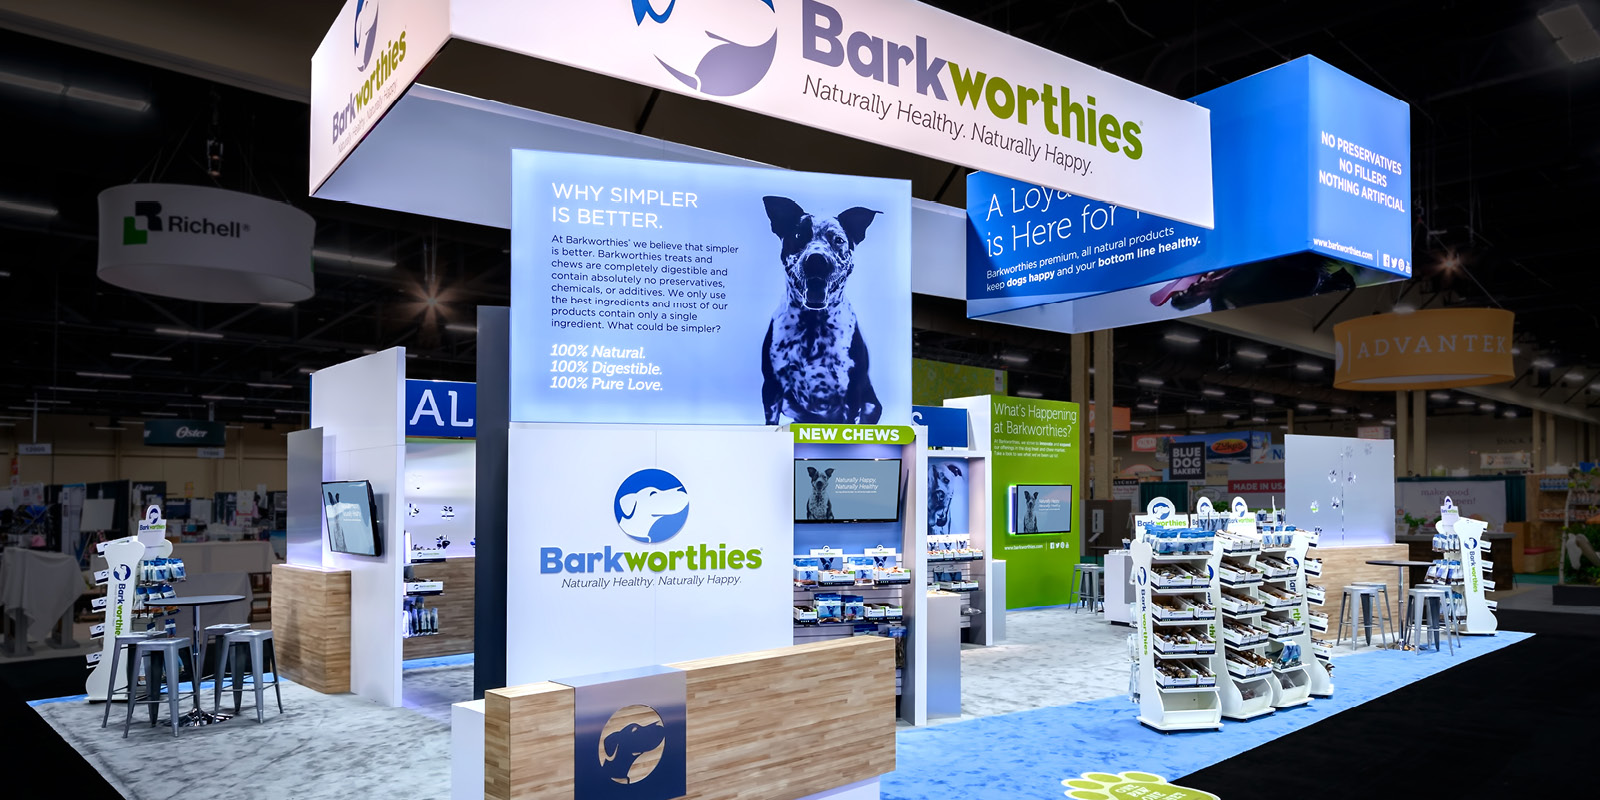 Hill & Partners Custom Branded Environment for Barkworthies